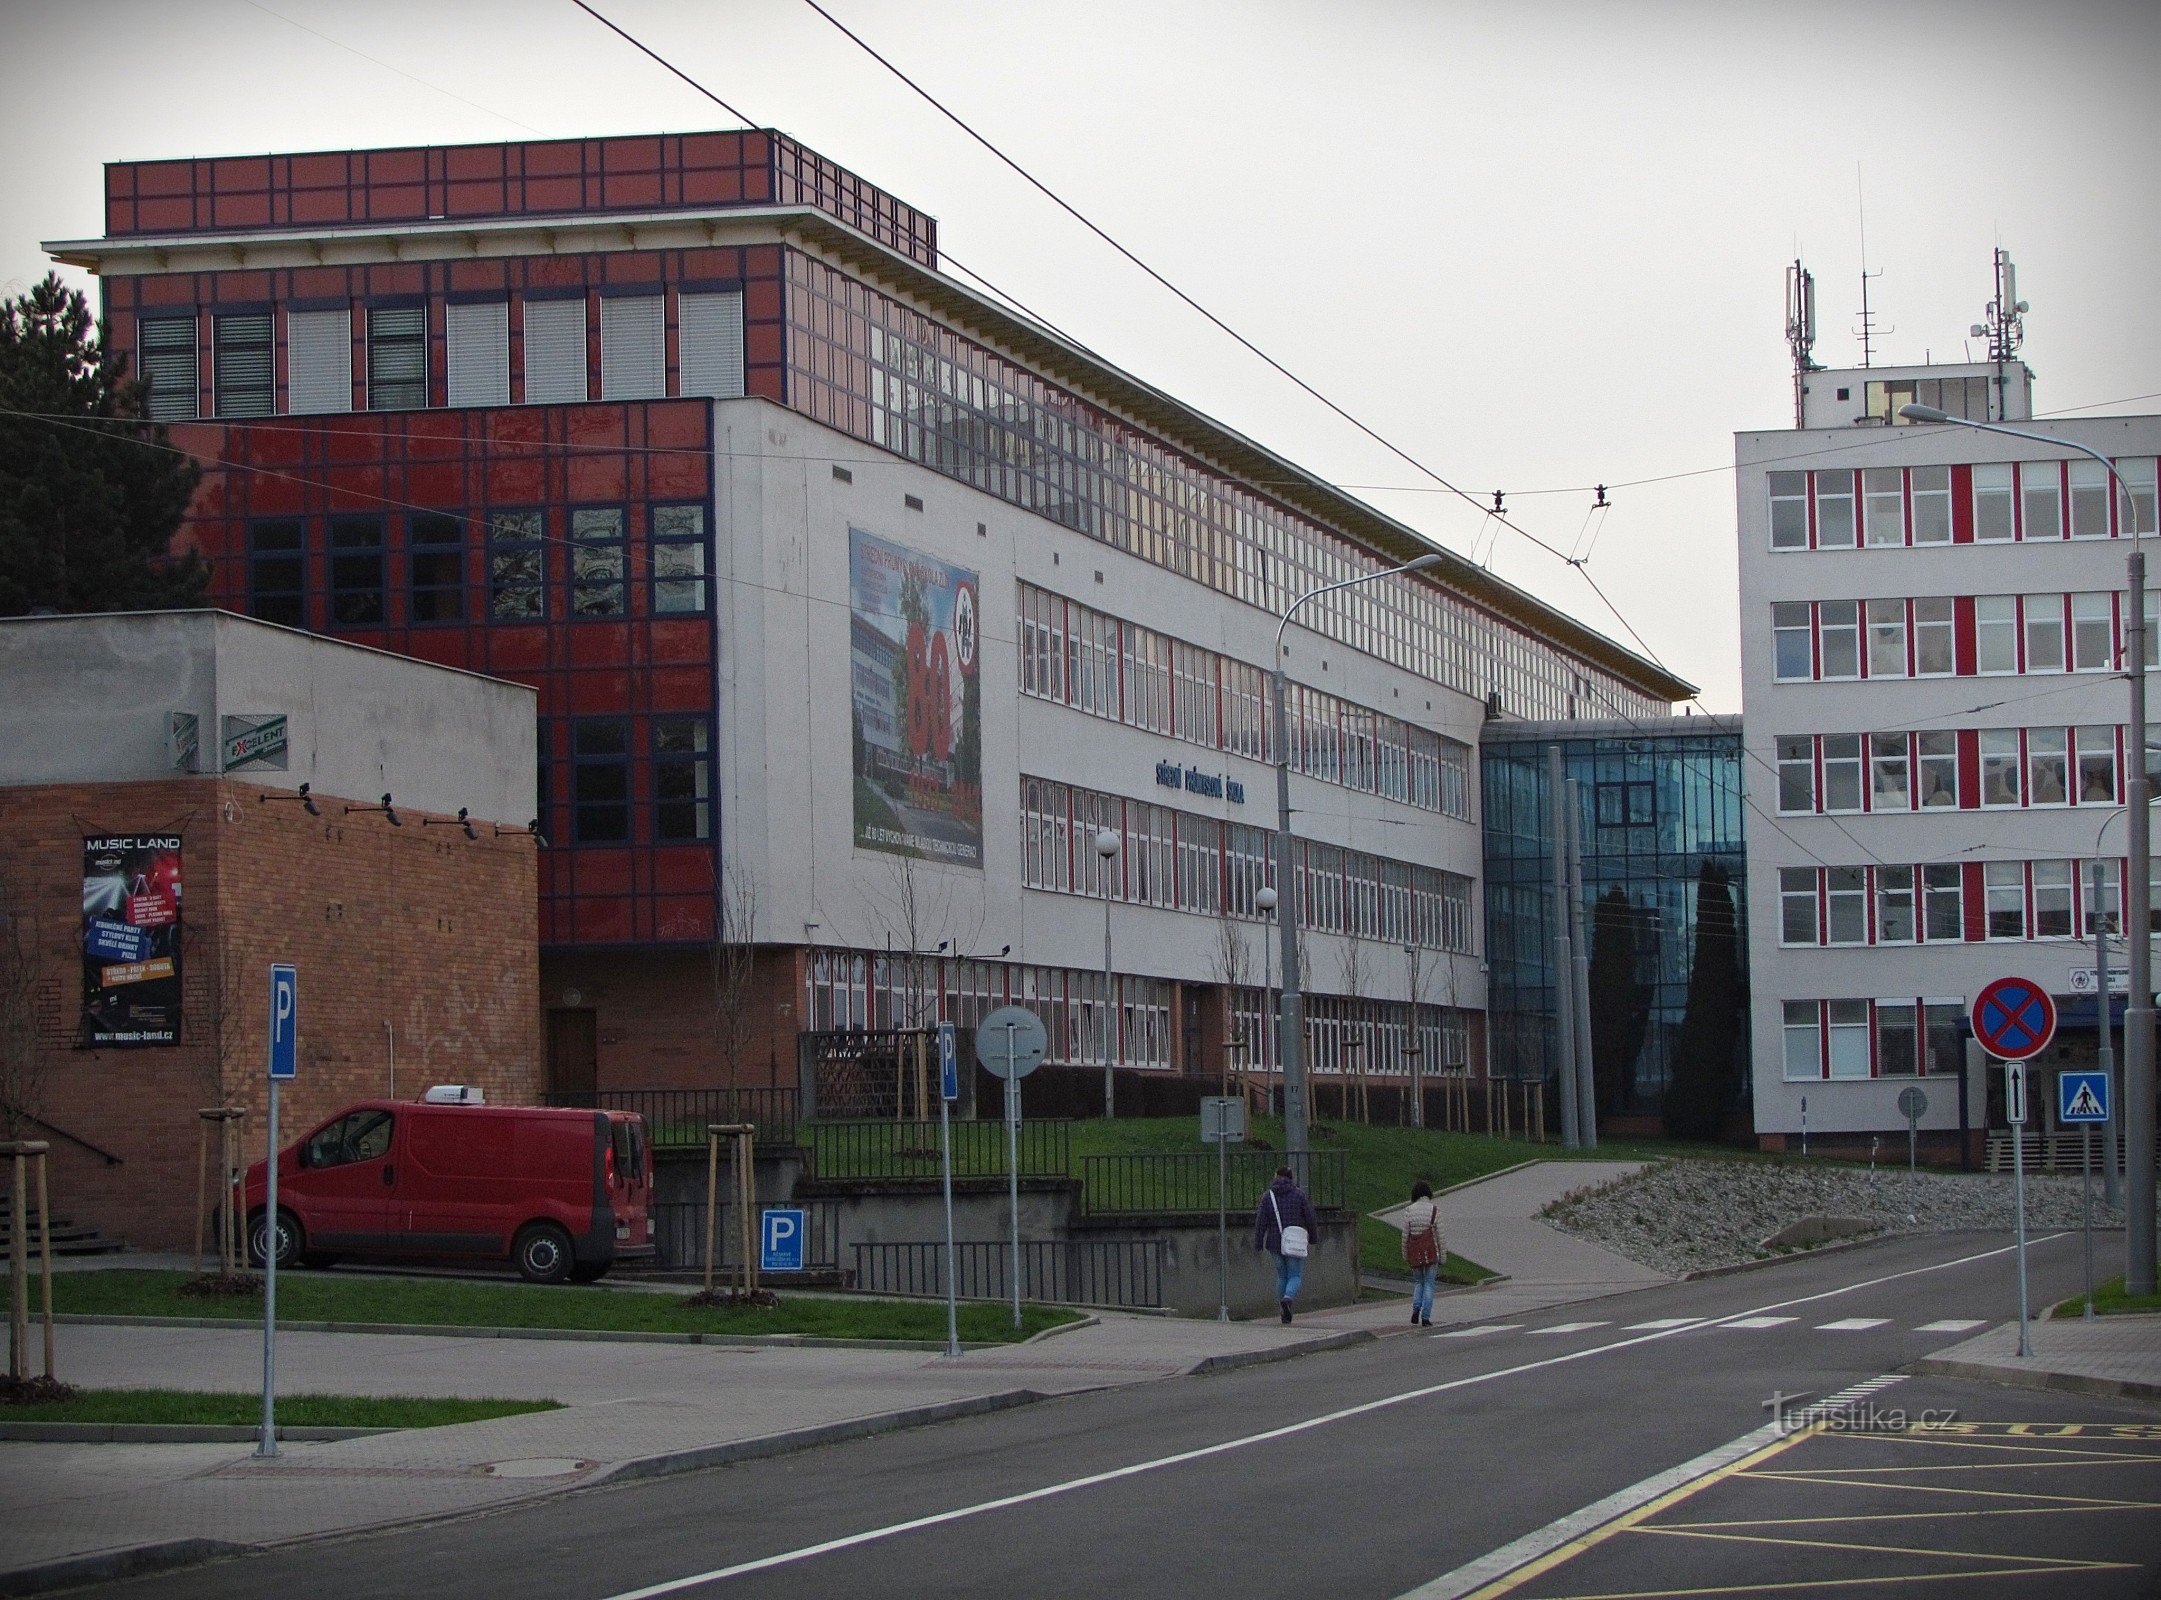 Zlín - tòa nhà của Trường Công nghiệp cấp hai